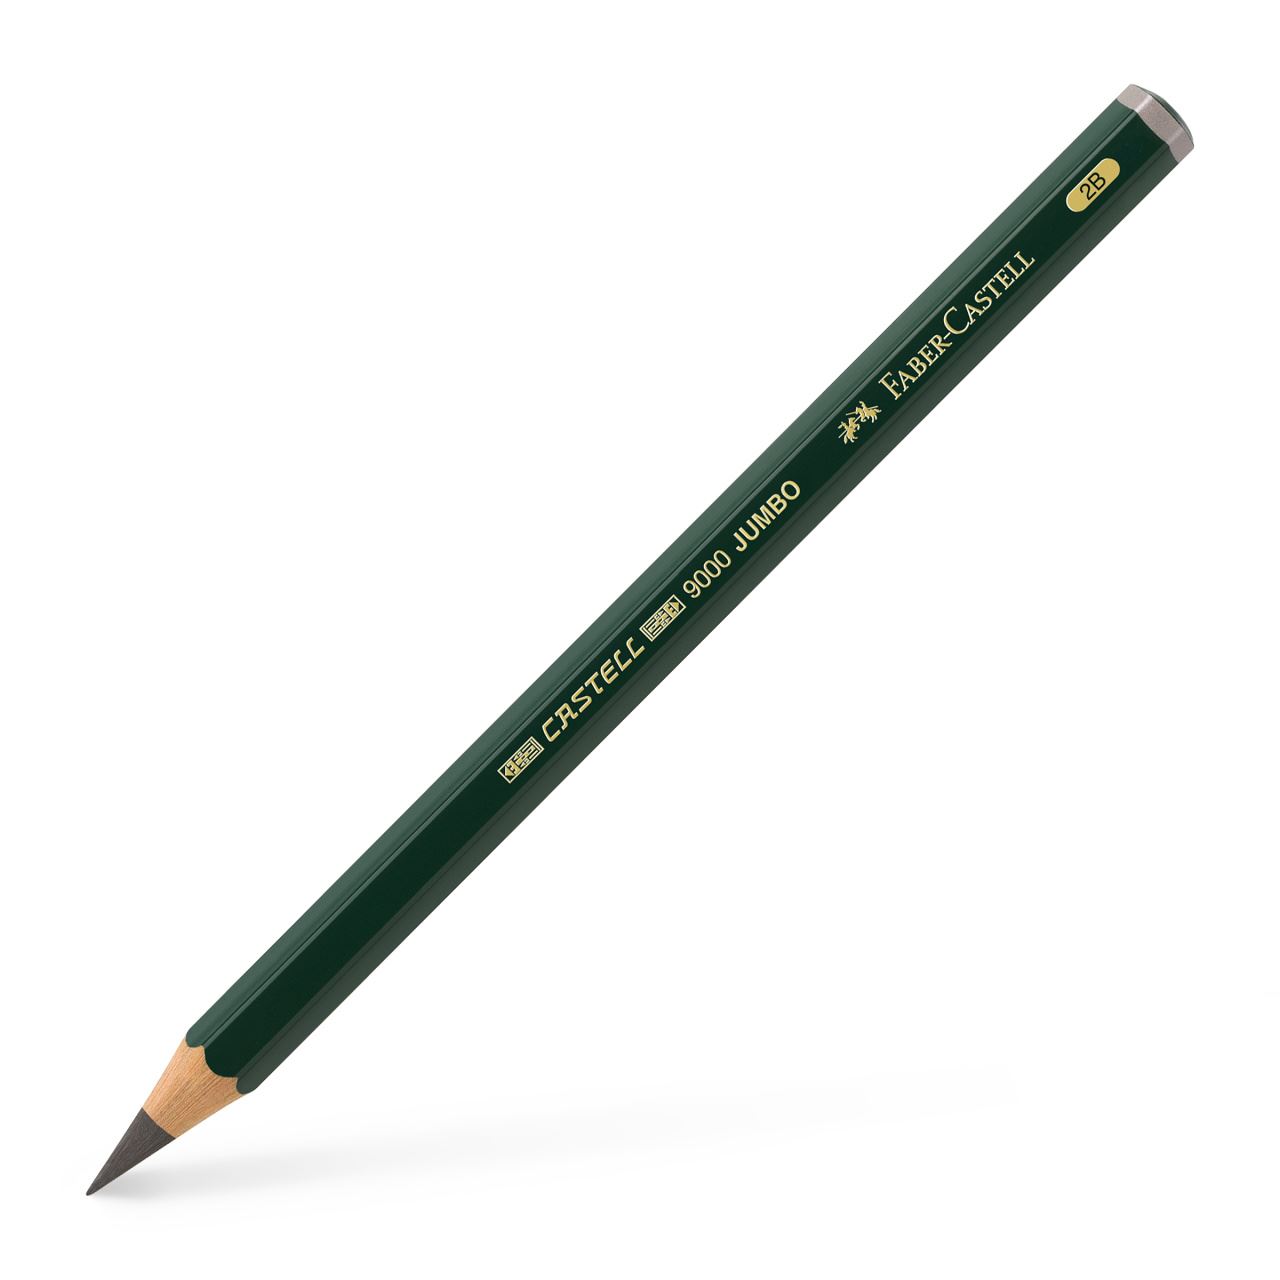 Faber-Castell - カステル9000番ジャンボ鉛筆 2B